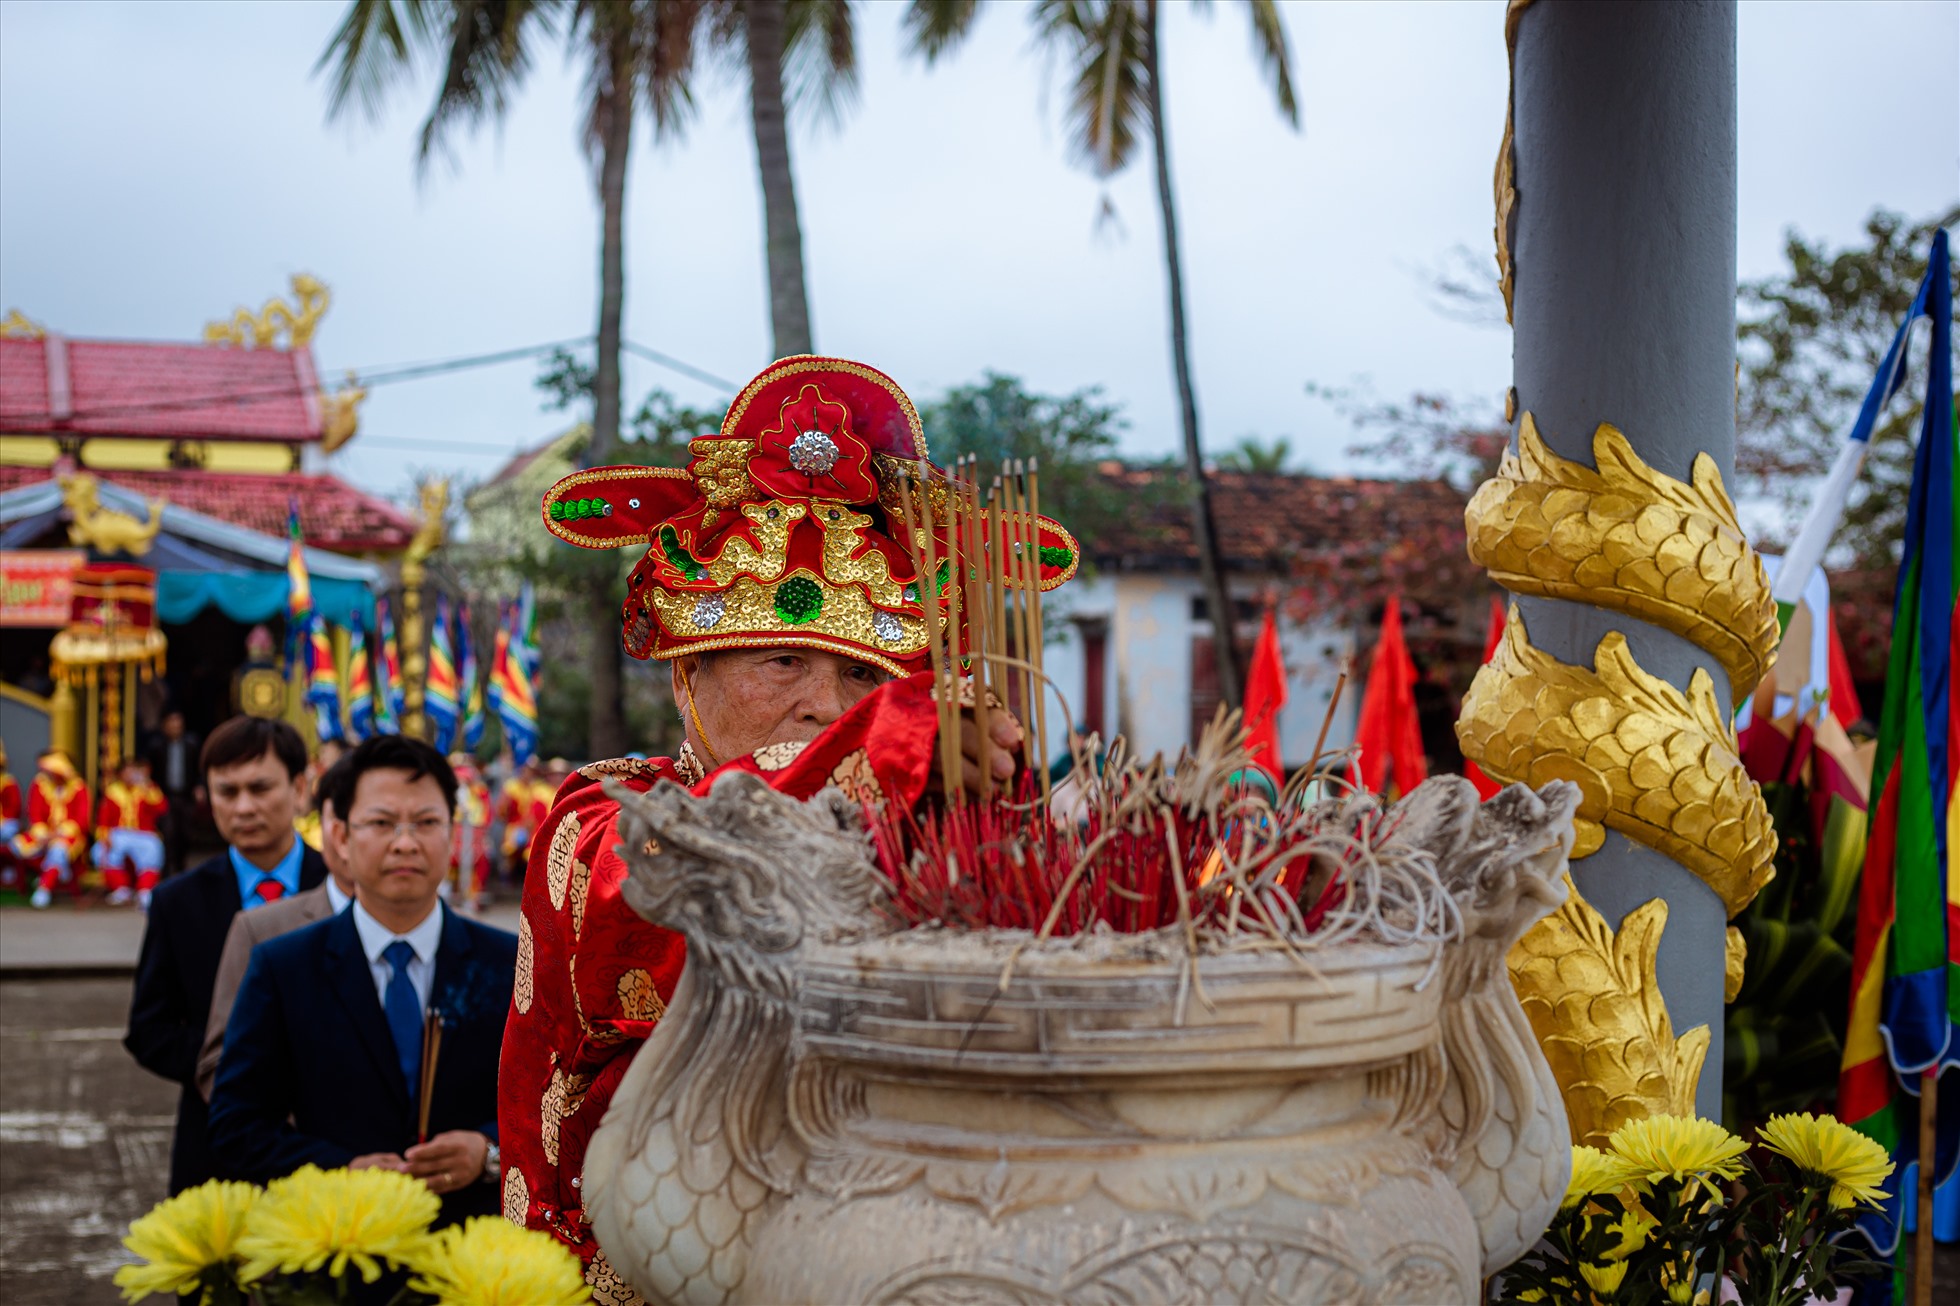 Lễ hội Cầu ngư Cảnh Dương mang tính chất đời sống văn hóa tâm linh của người dân Cảnh Dương có từ xa xưa. Ảnh: Đức Tuấn